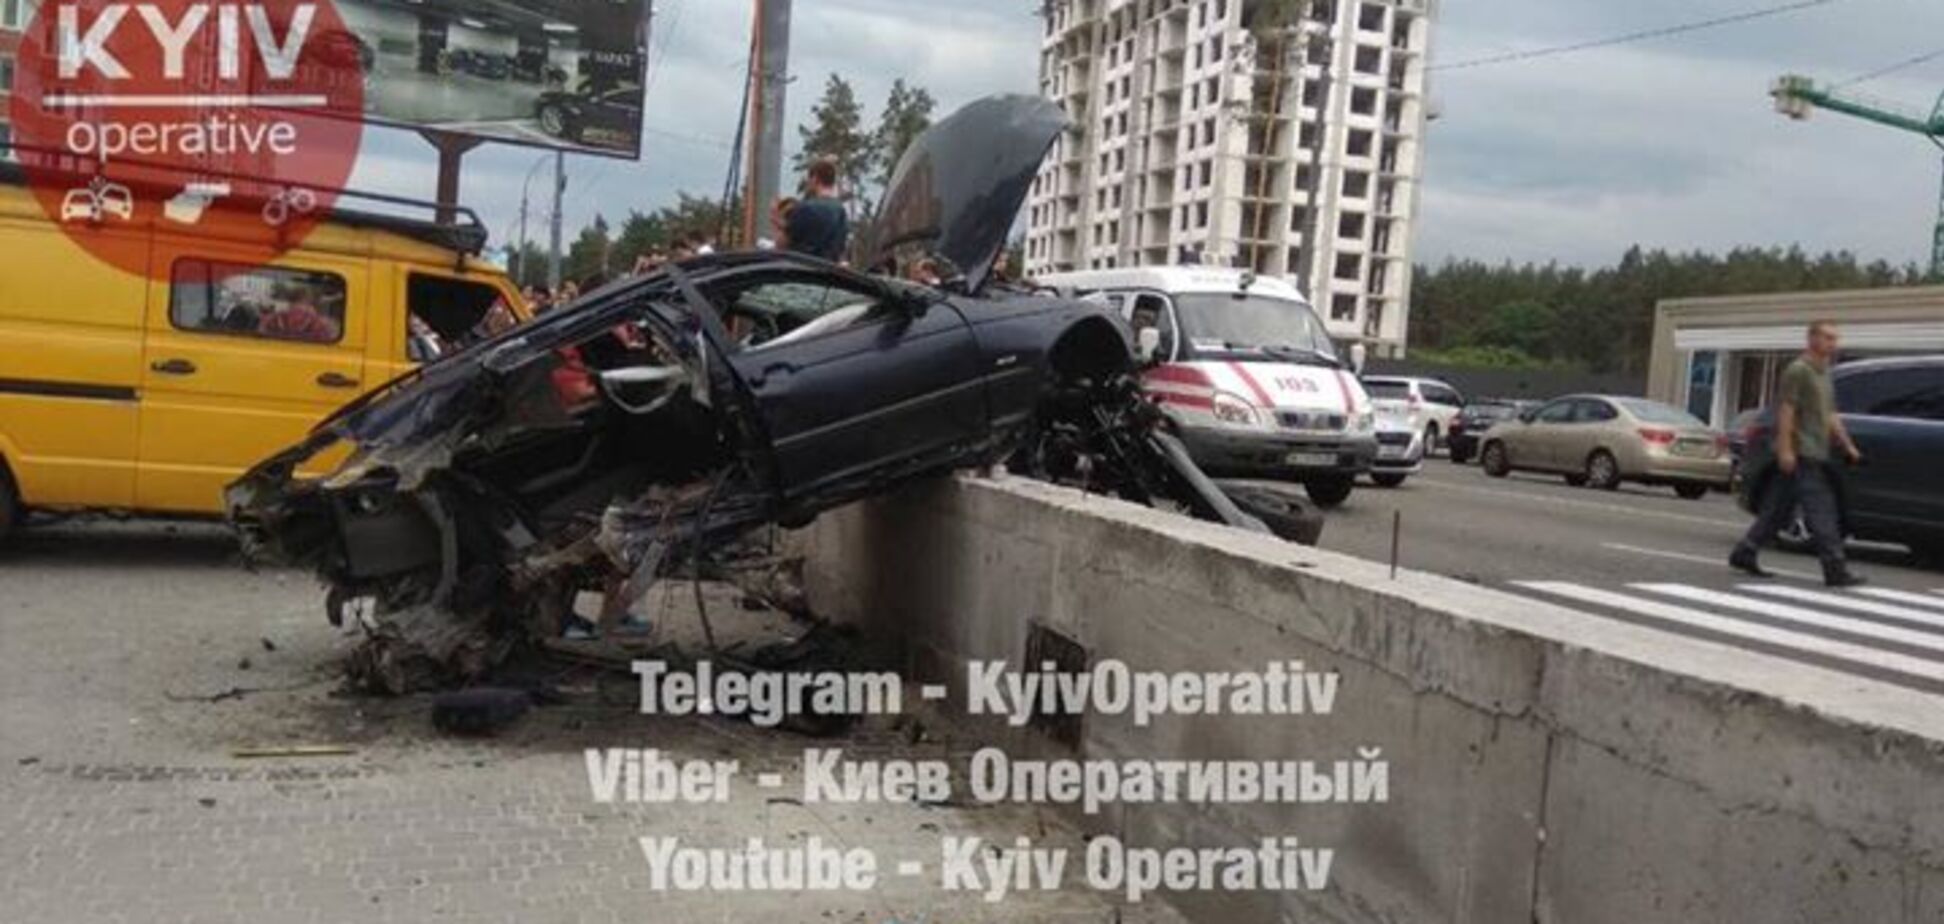  Спидометр застыл на 145 км/ч: под Киевом BMW вылетело в остановку